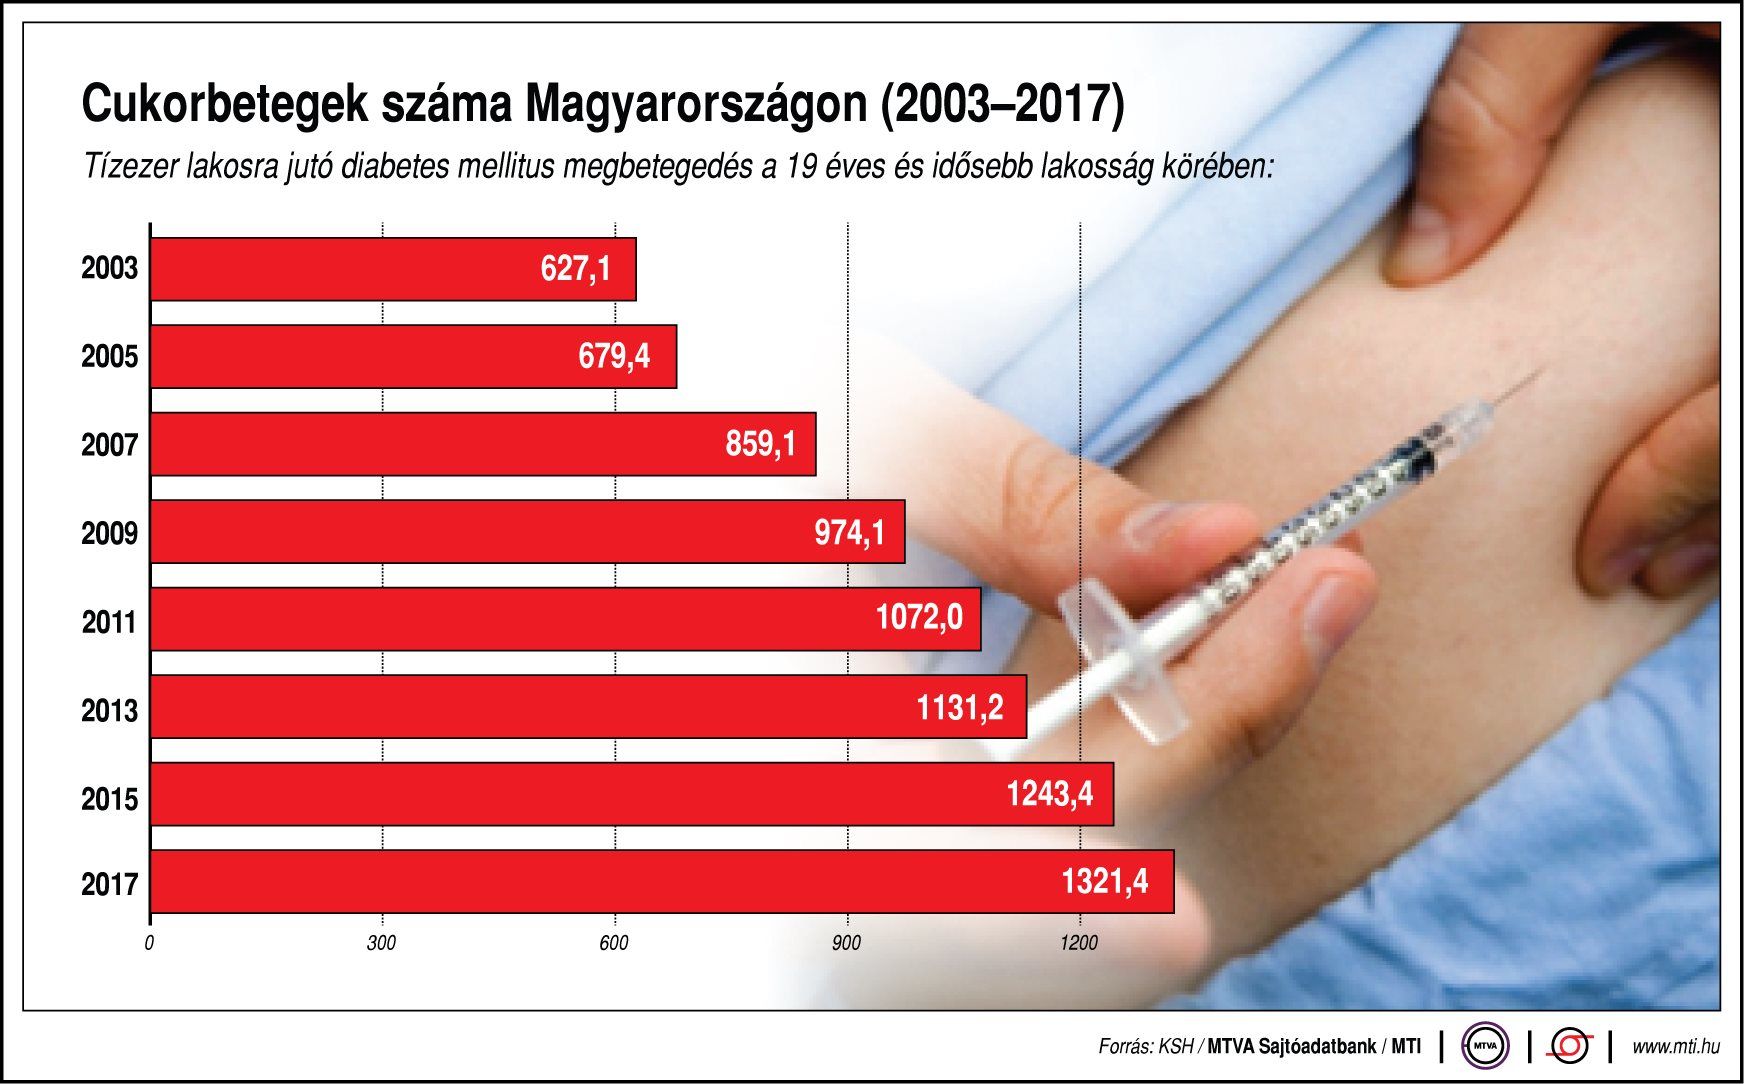 Járványként terjed a cukorbetegség Magyarországon